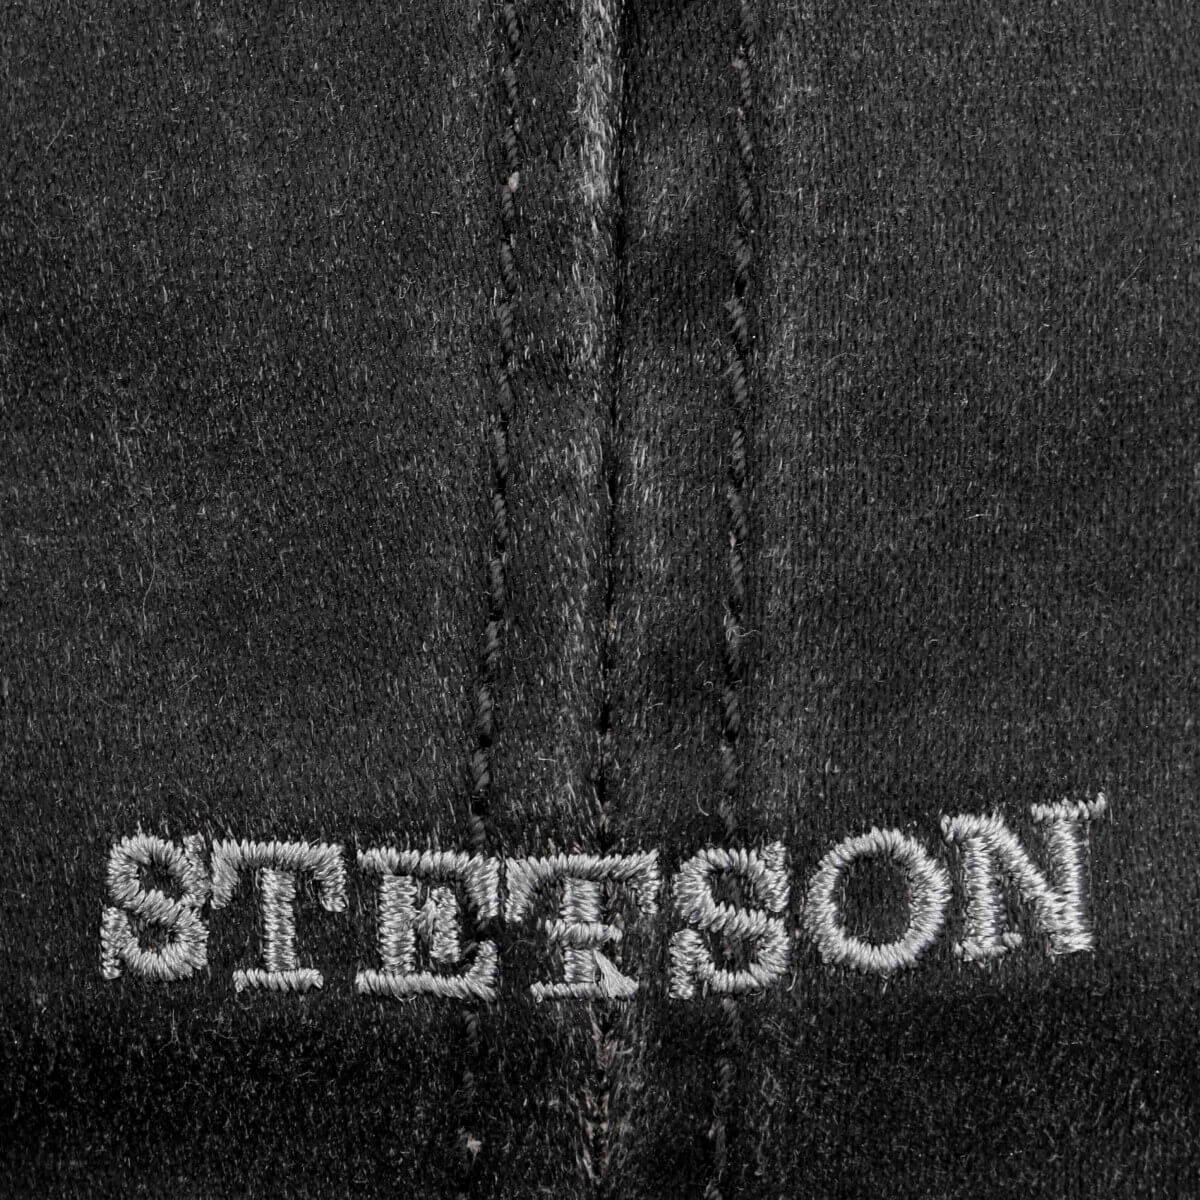 Stetson Hatteras Old Cotton Newsboy Cap Black